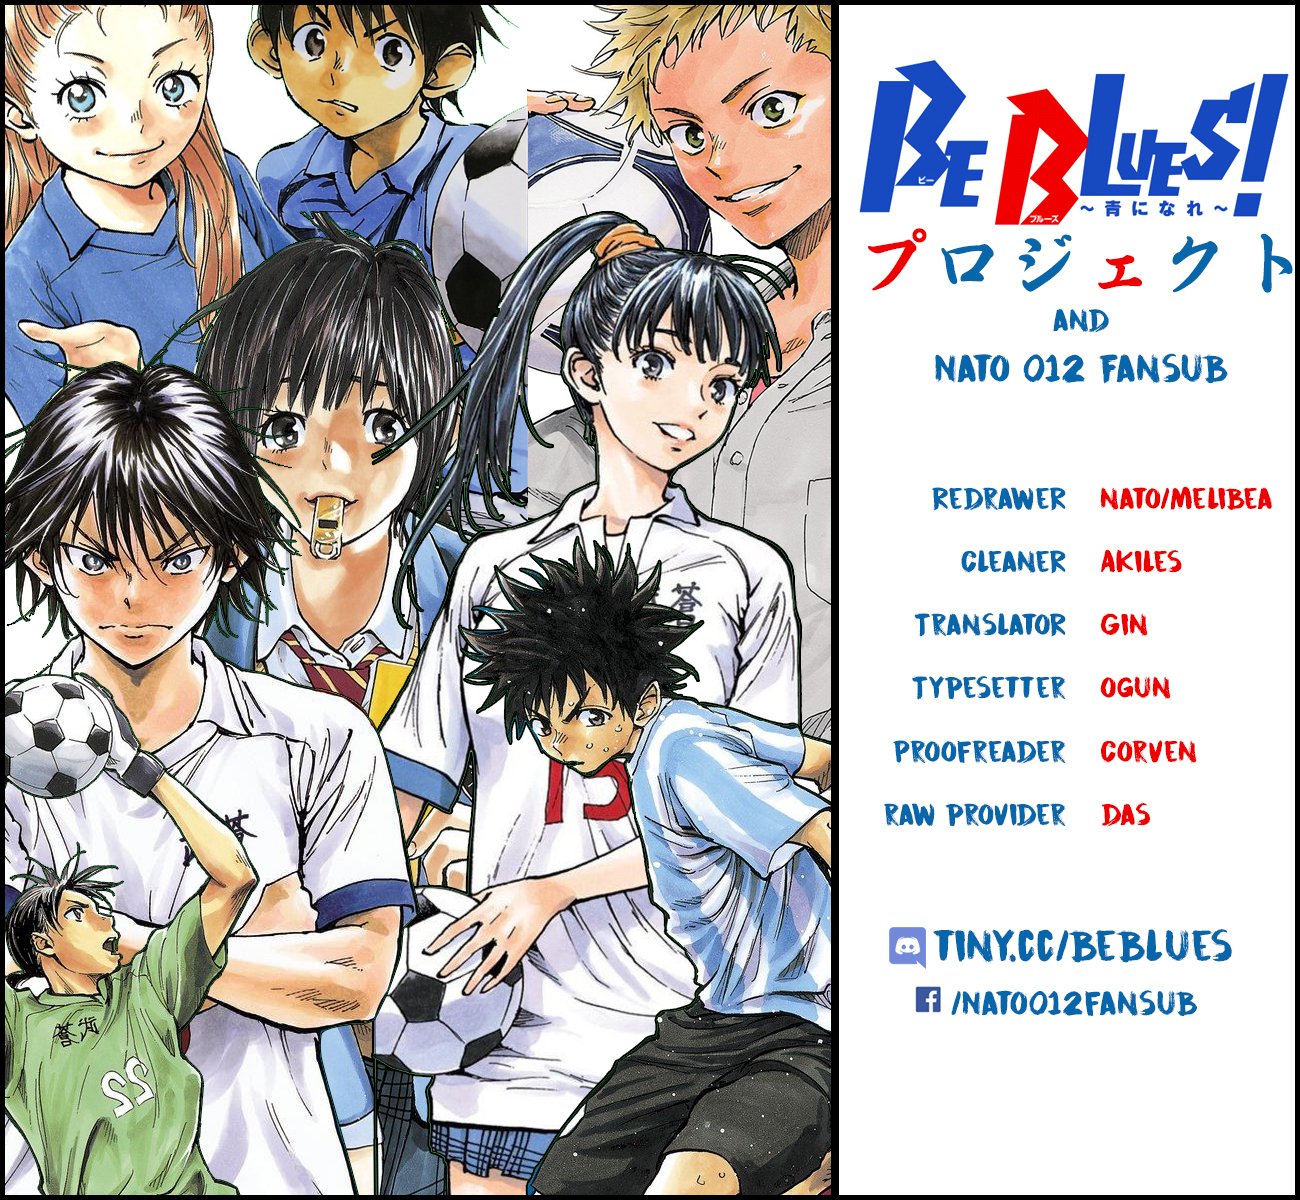 Be Blues! - Ao ni Nare vol.16 ch.148